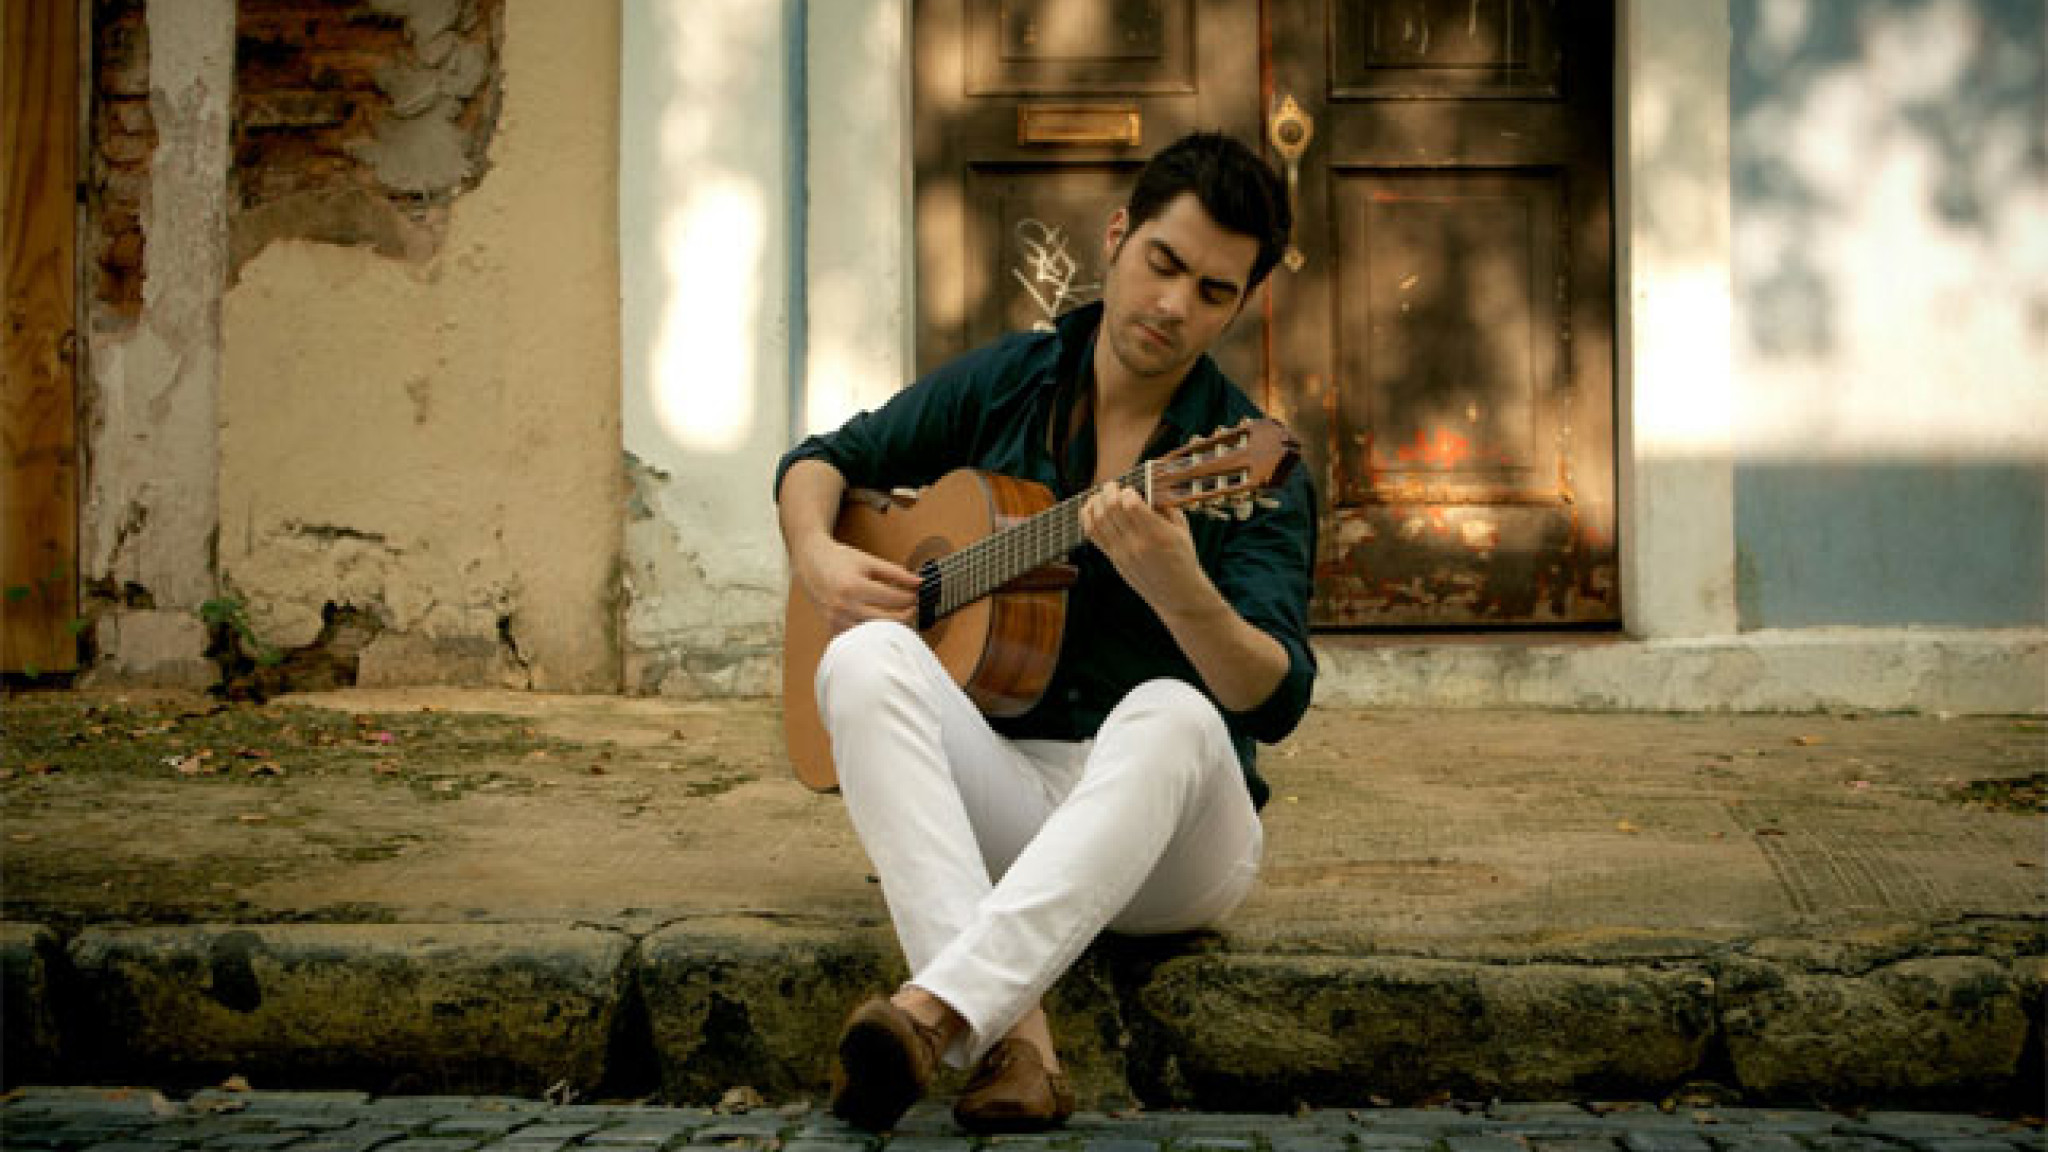 Das Album 'Latino' erscheint nun in der Special 'Gold' Edition